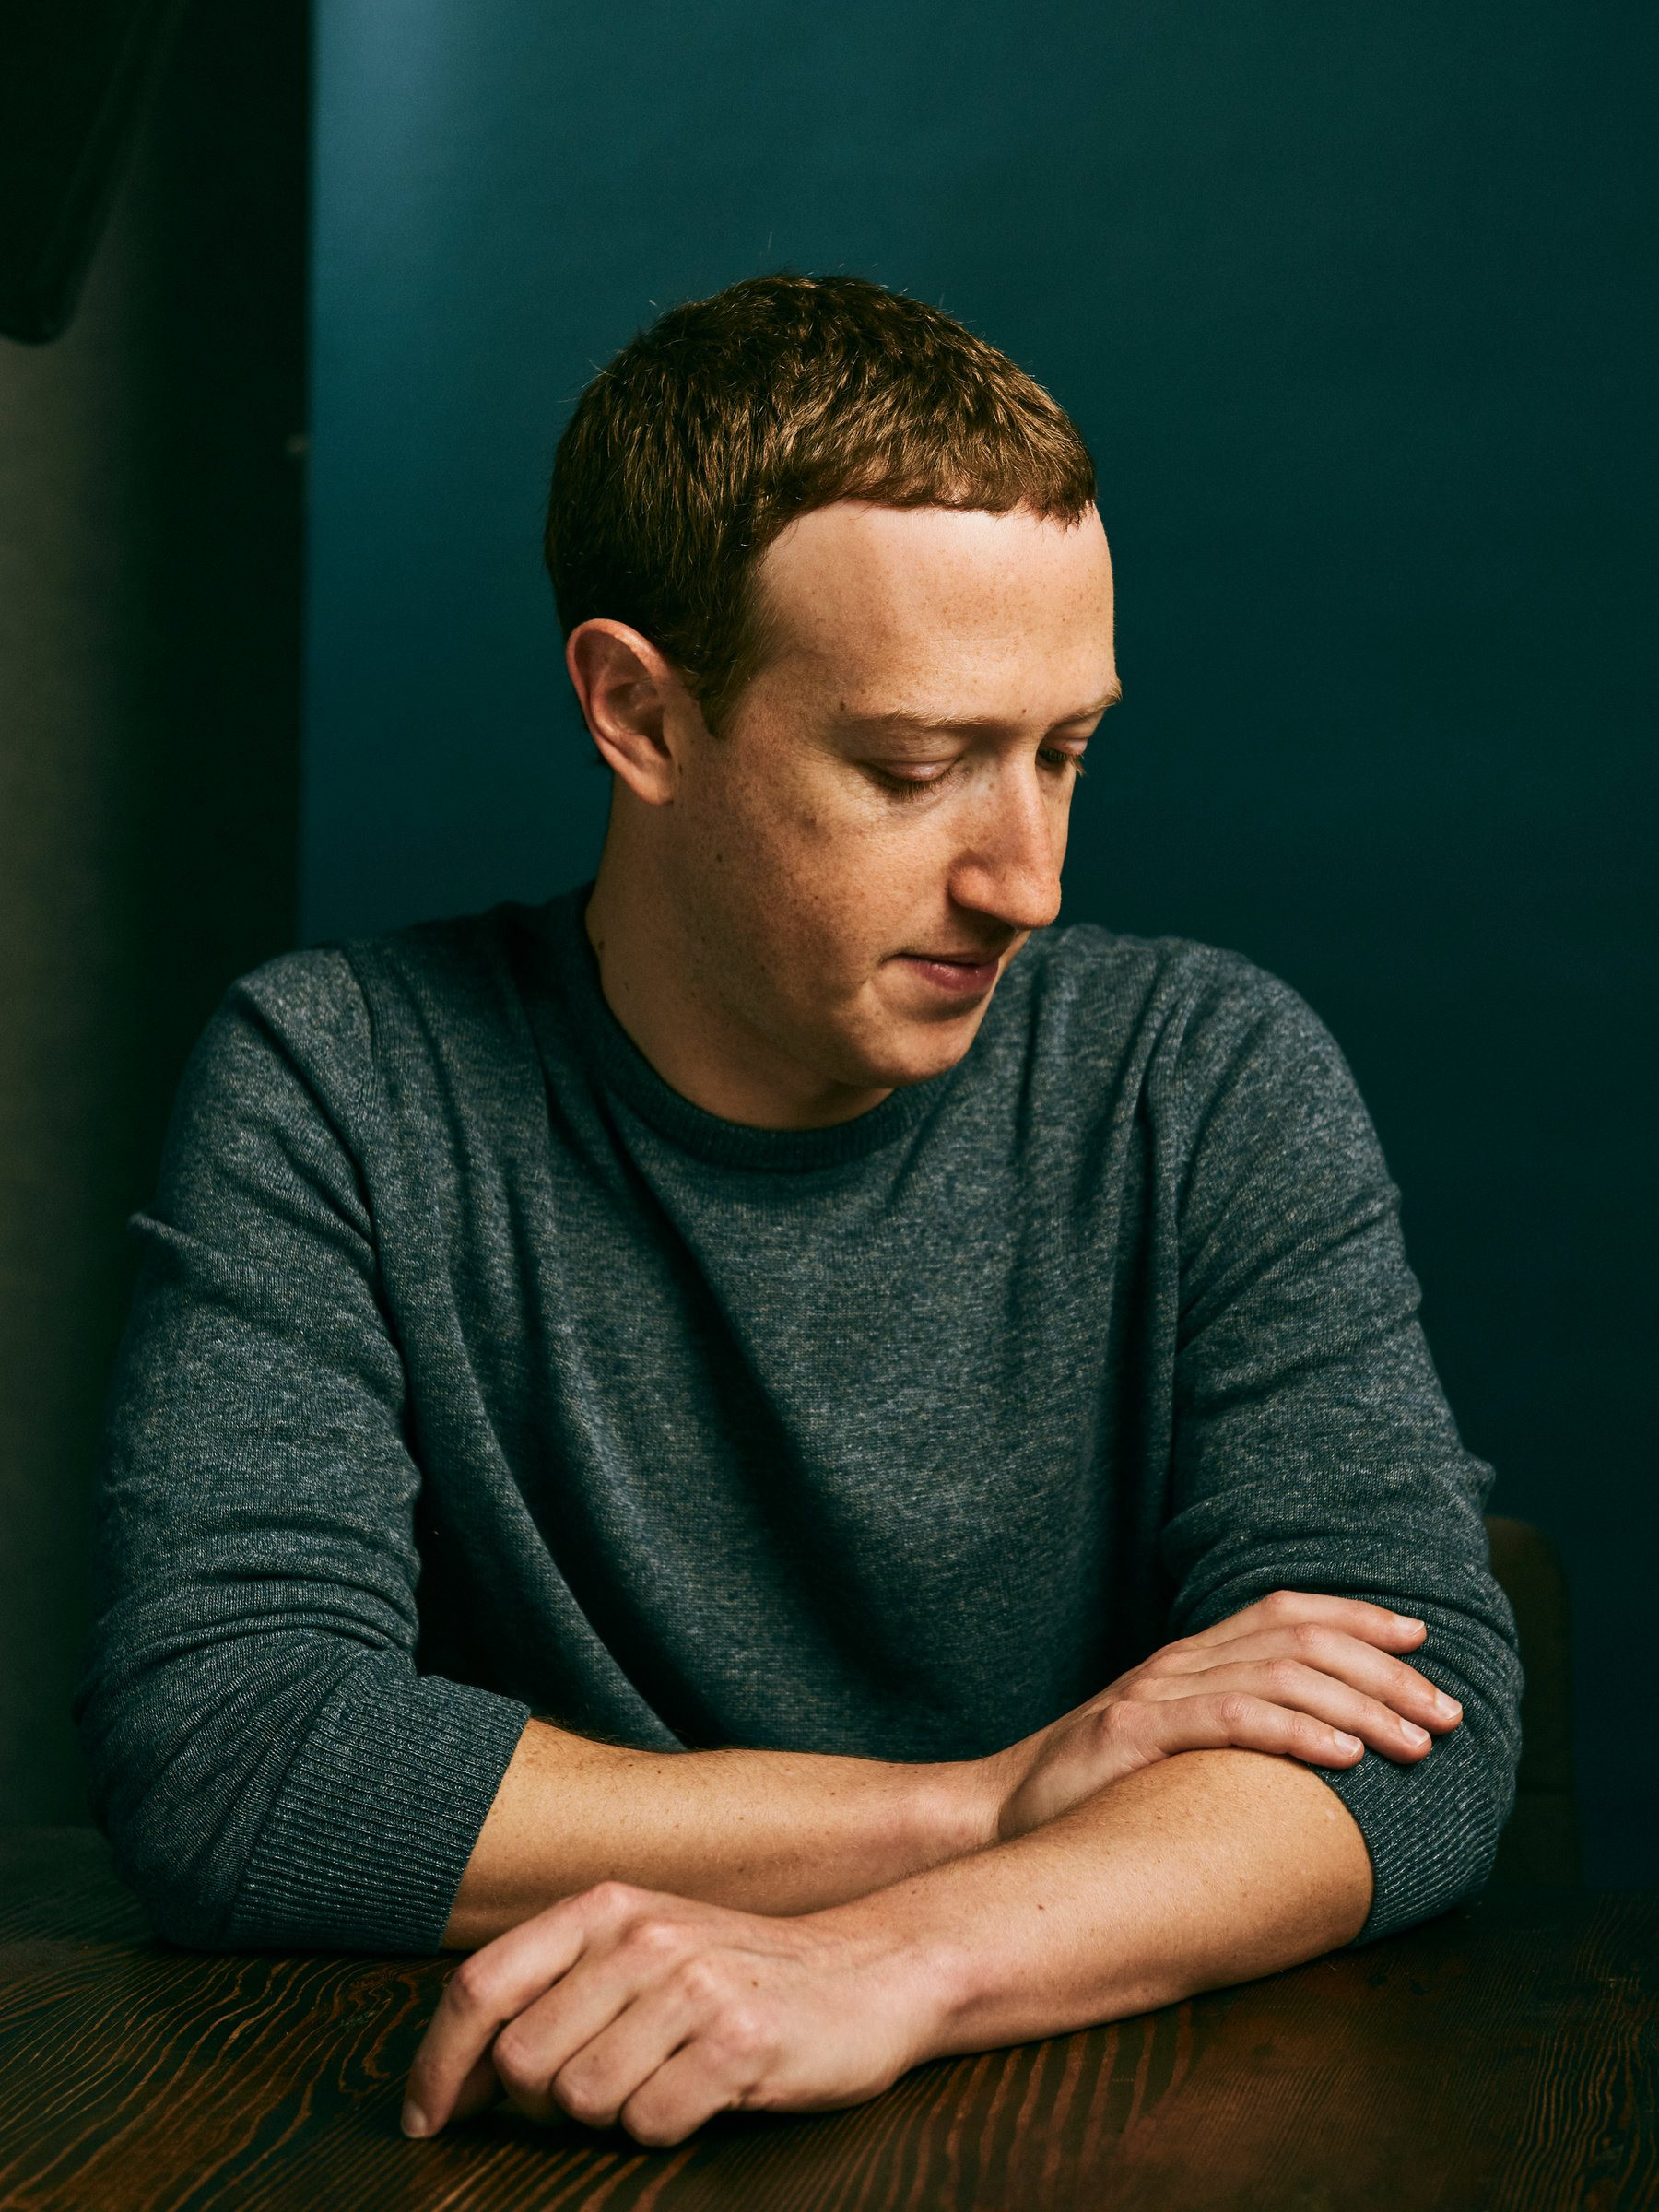 Cơn đau đầu của Mark Zuckerberg: Hơn 1 năm làm vũ trụ ảo, Meta vẫn sống nhờ vào quảng cáo, Reality Labs 'đốt' gần 14 tỷ USD mà không mang lại kết quả gì - Ảnh 2.